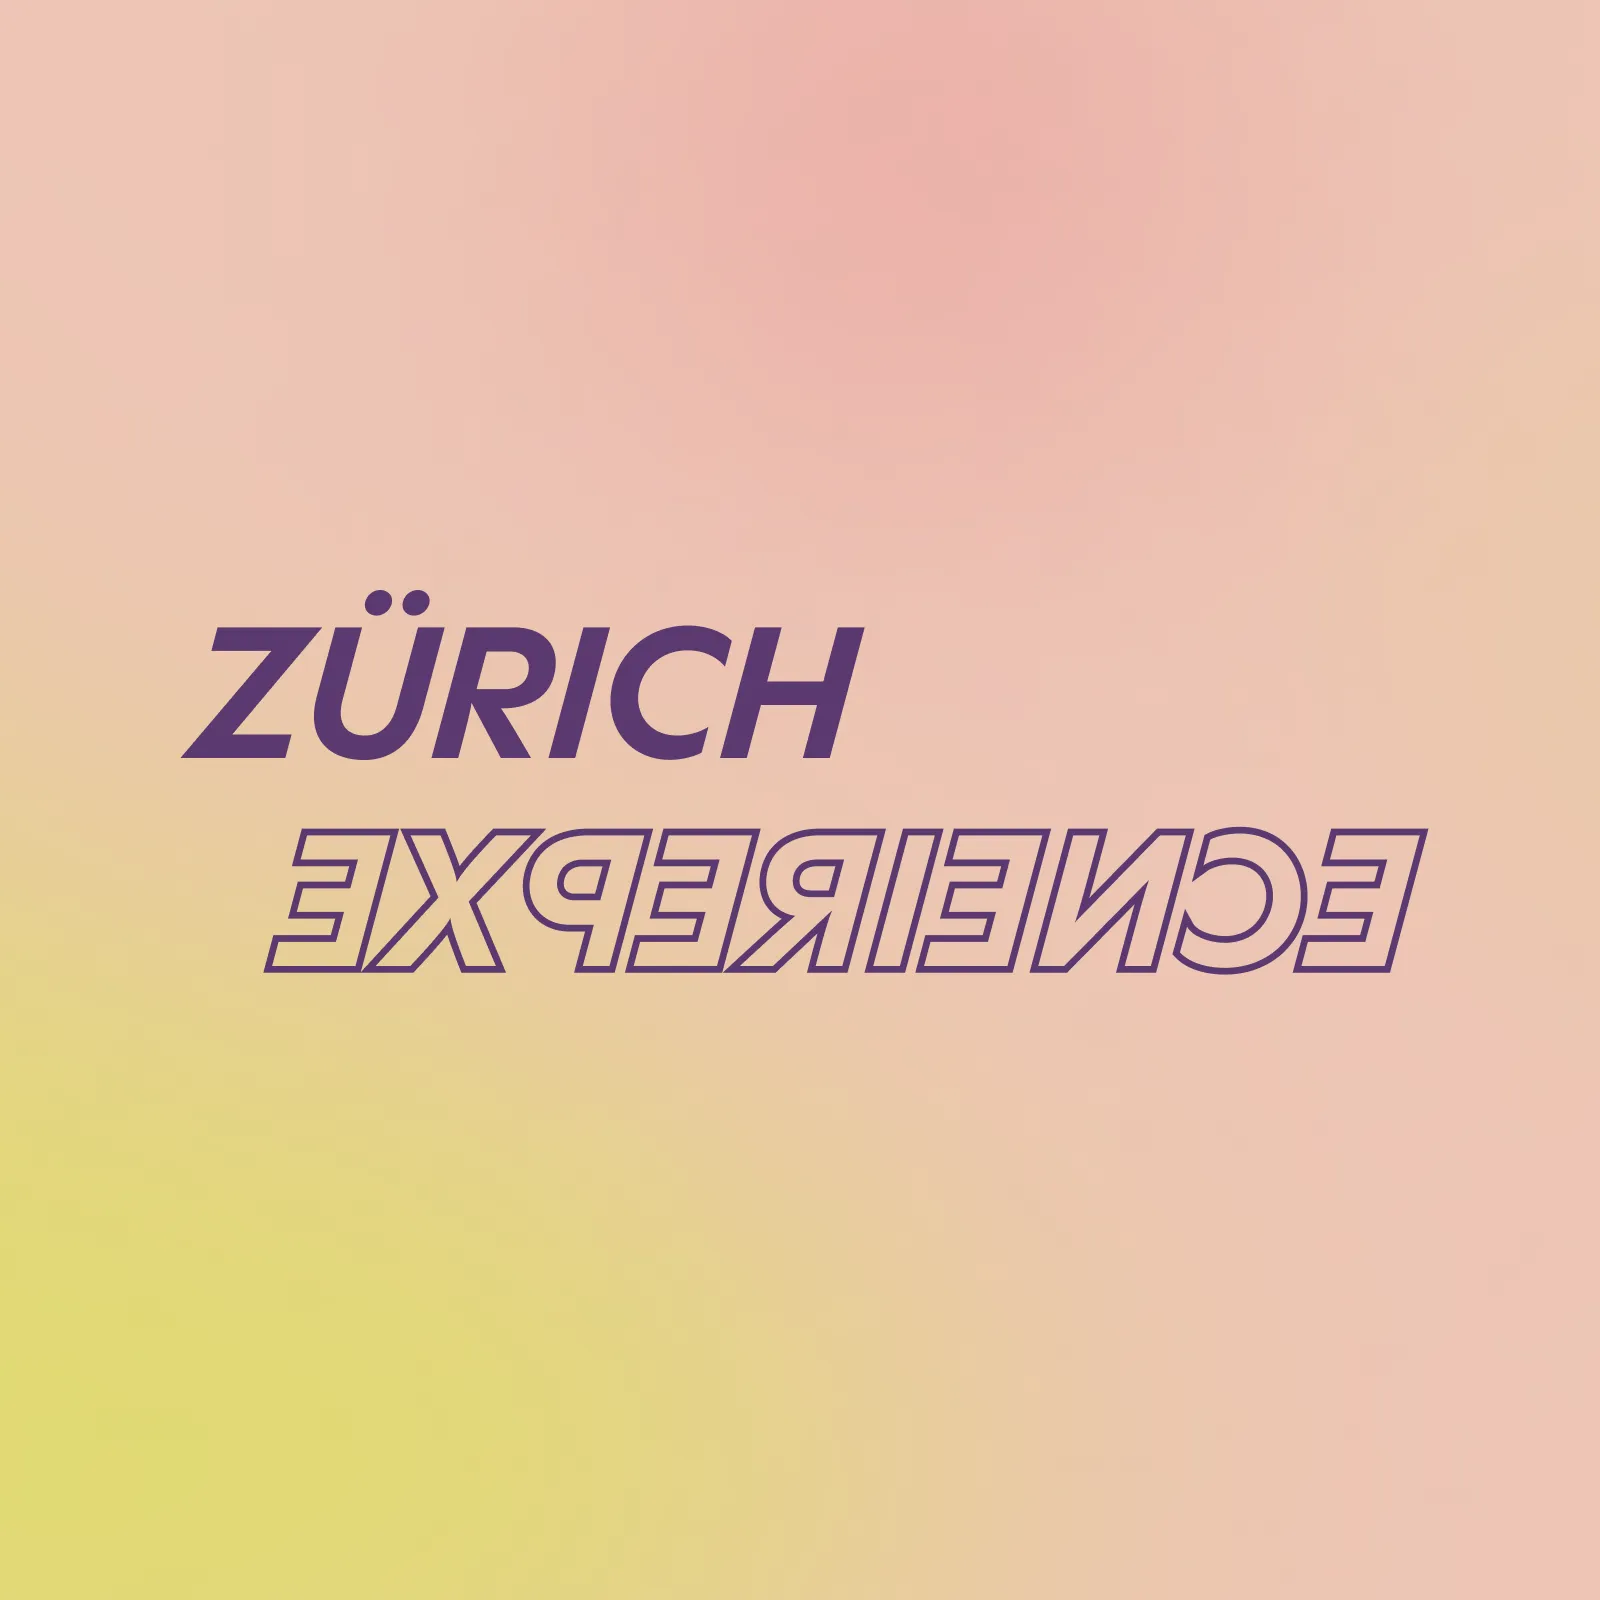 Zürich Experience